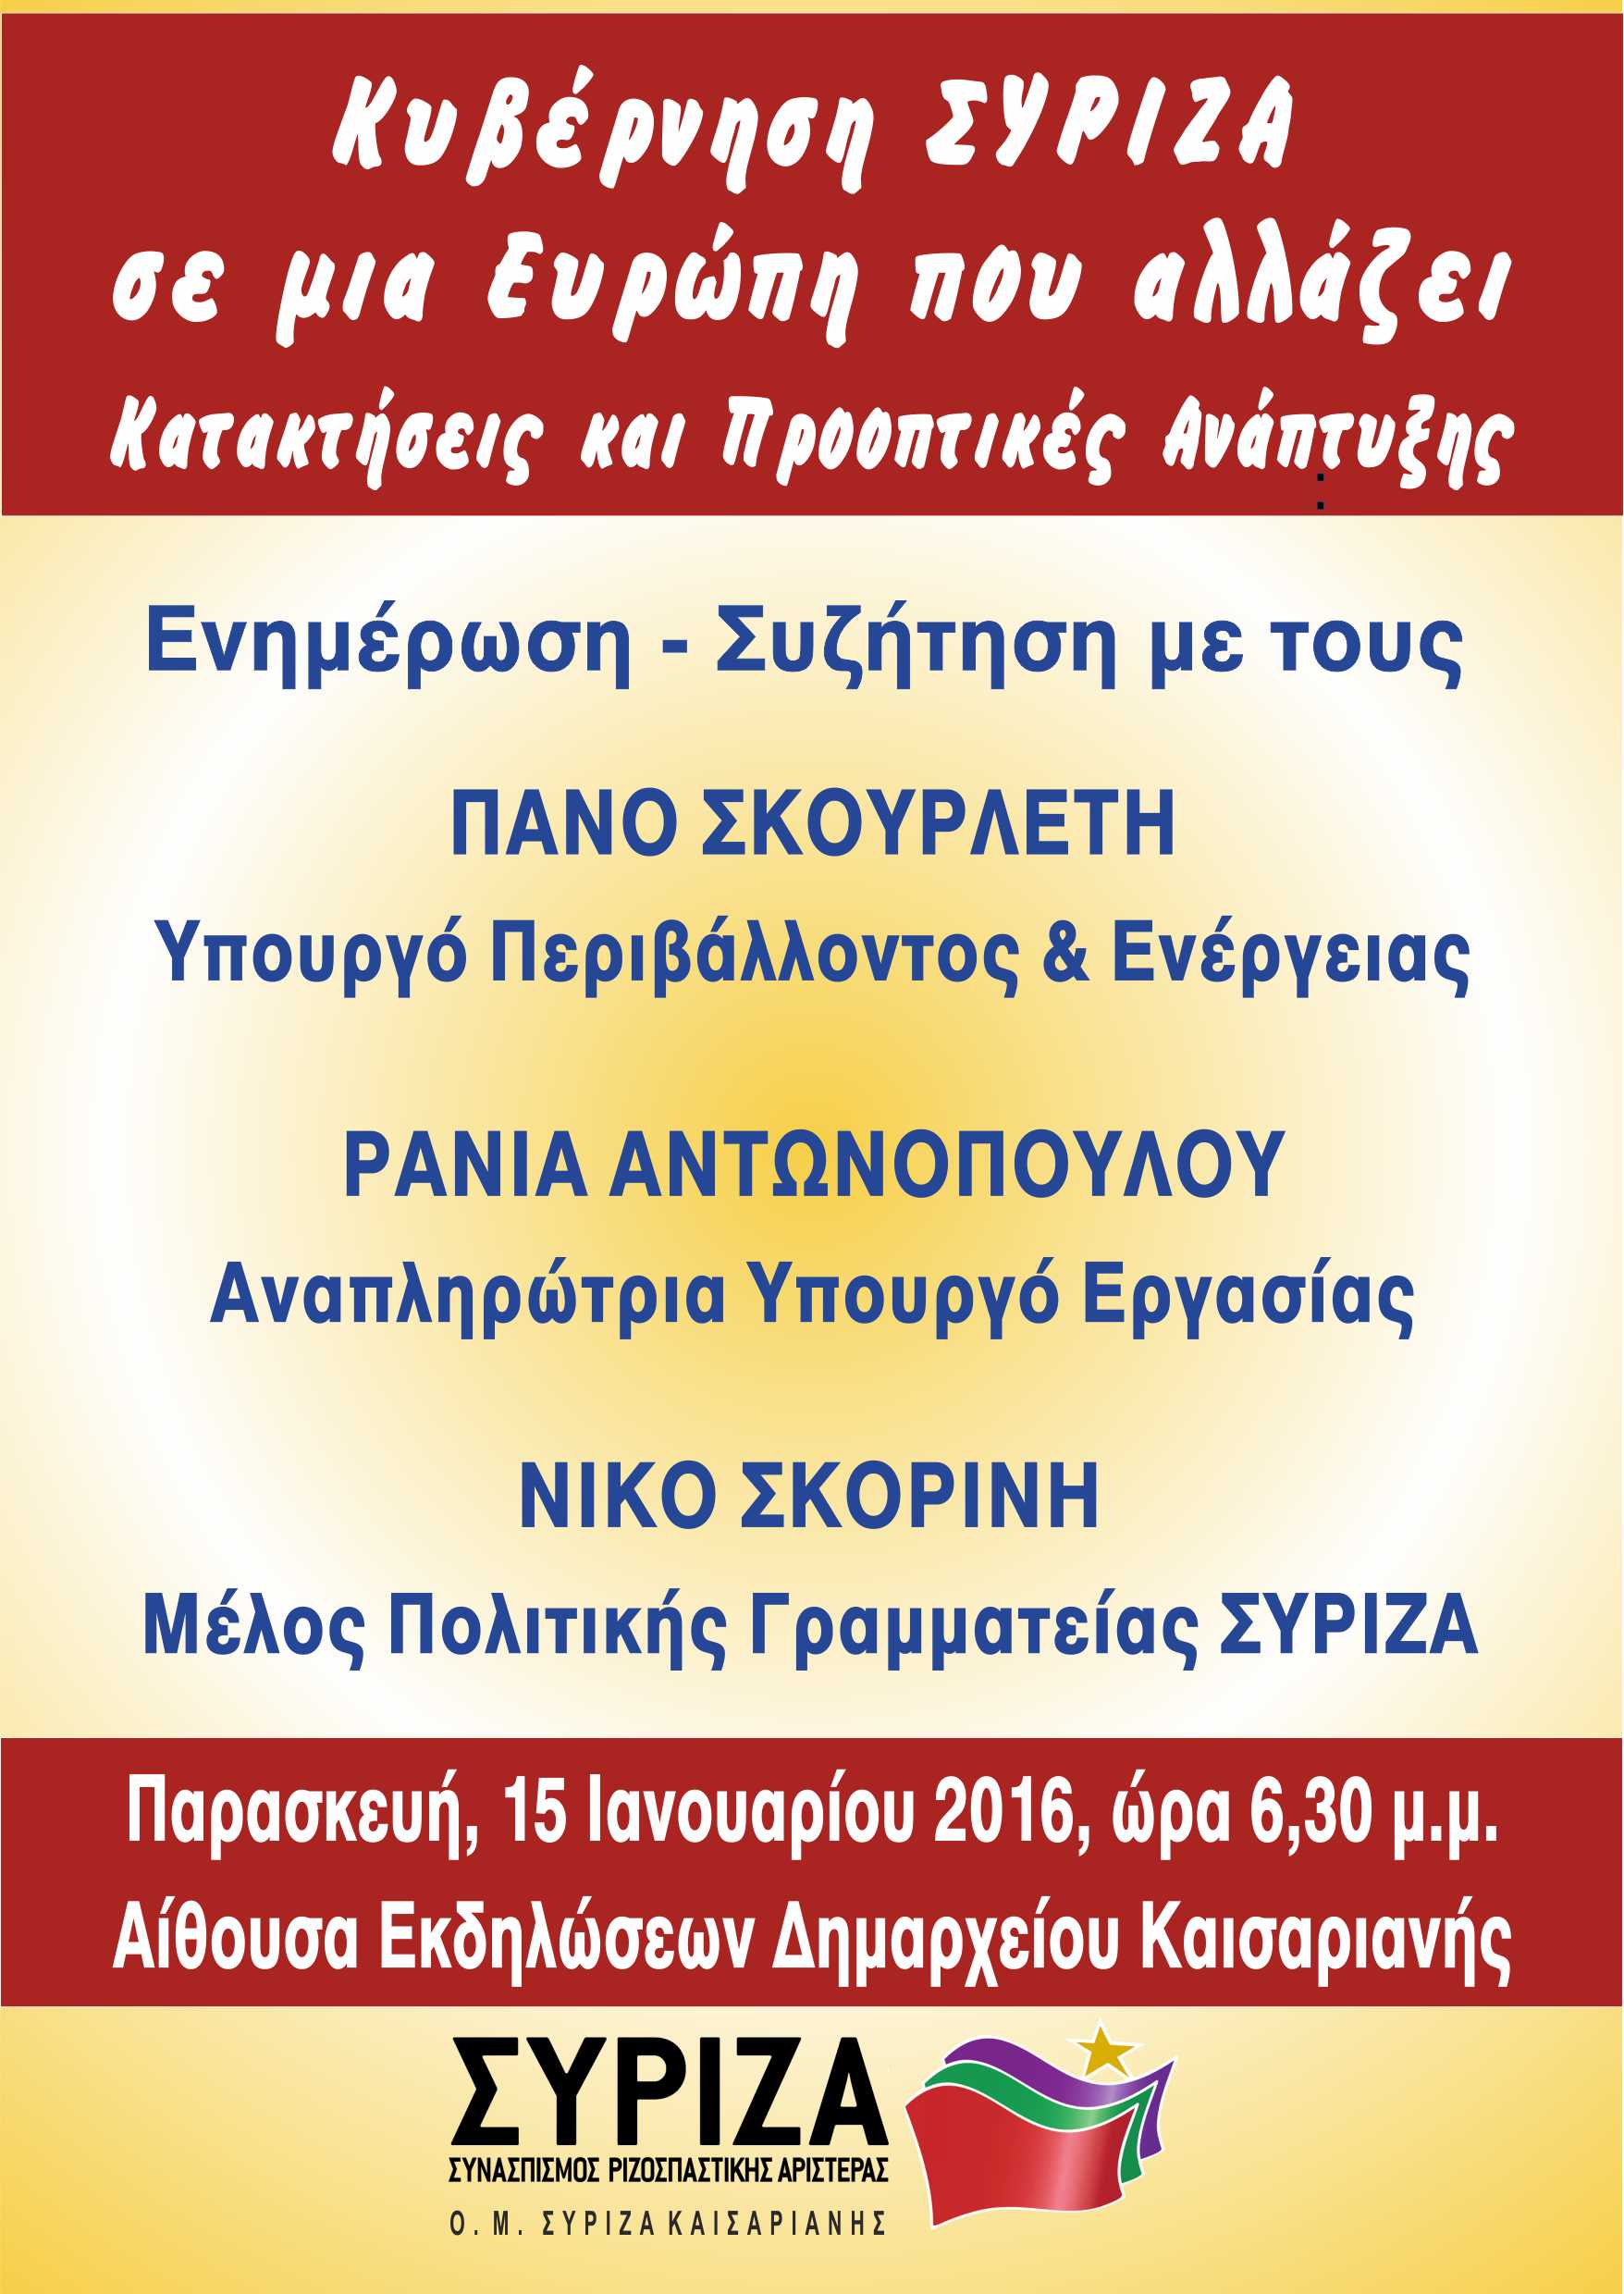 Εκδήλωση της ΟΜ Καισαριανής: Κυβέρνηση ΣΥΡΙΖΑ σε μια Ευρώπη που αλλάζει